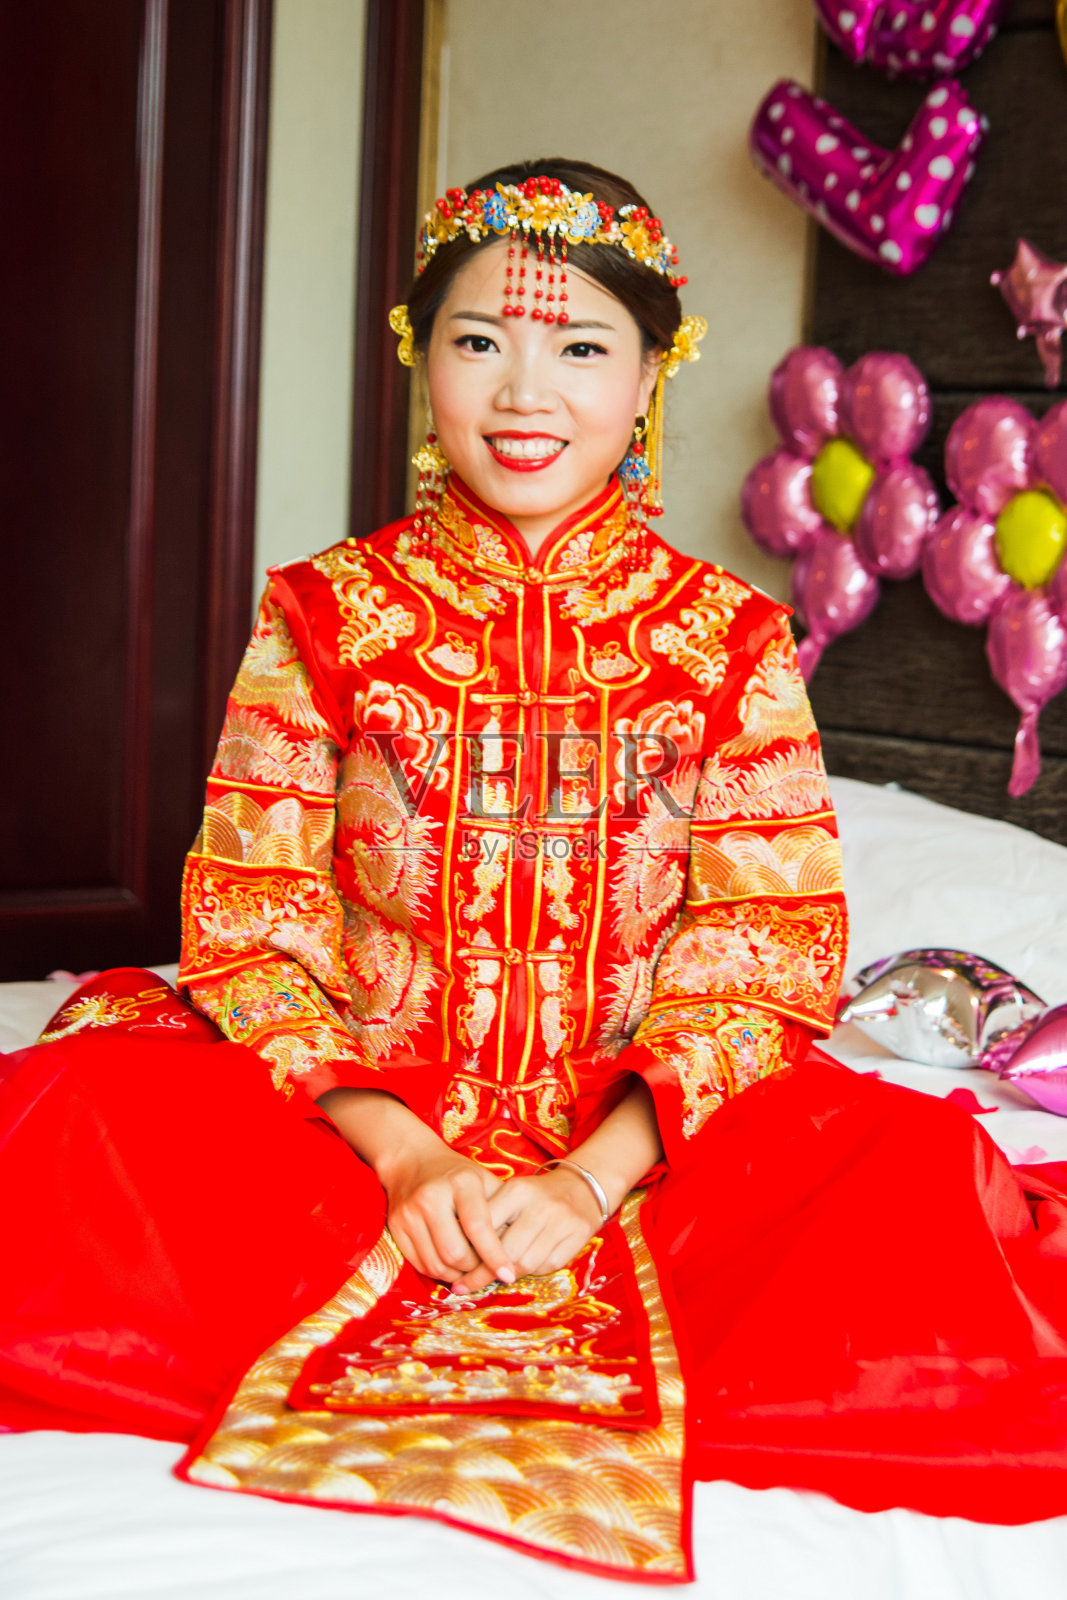 穿着传统红色婚纱的中国新娘照片摄影图片